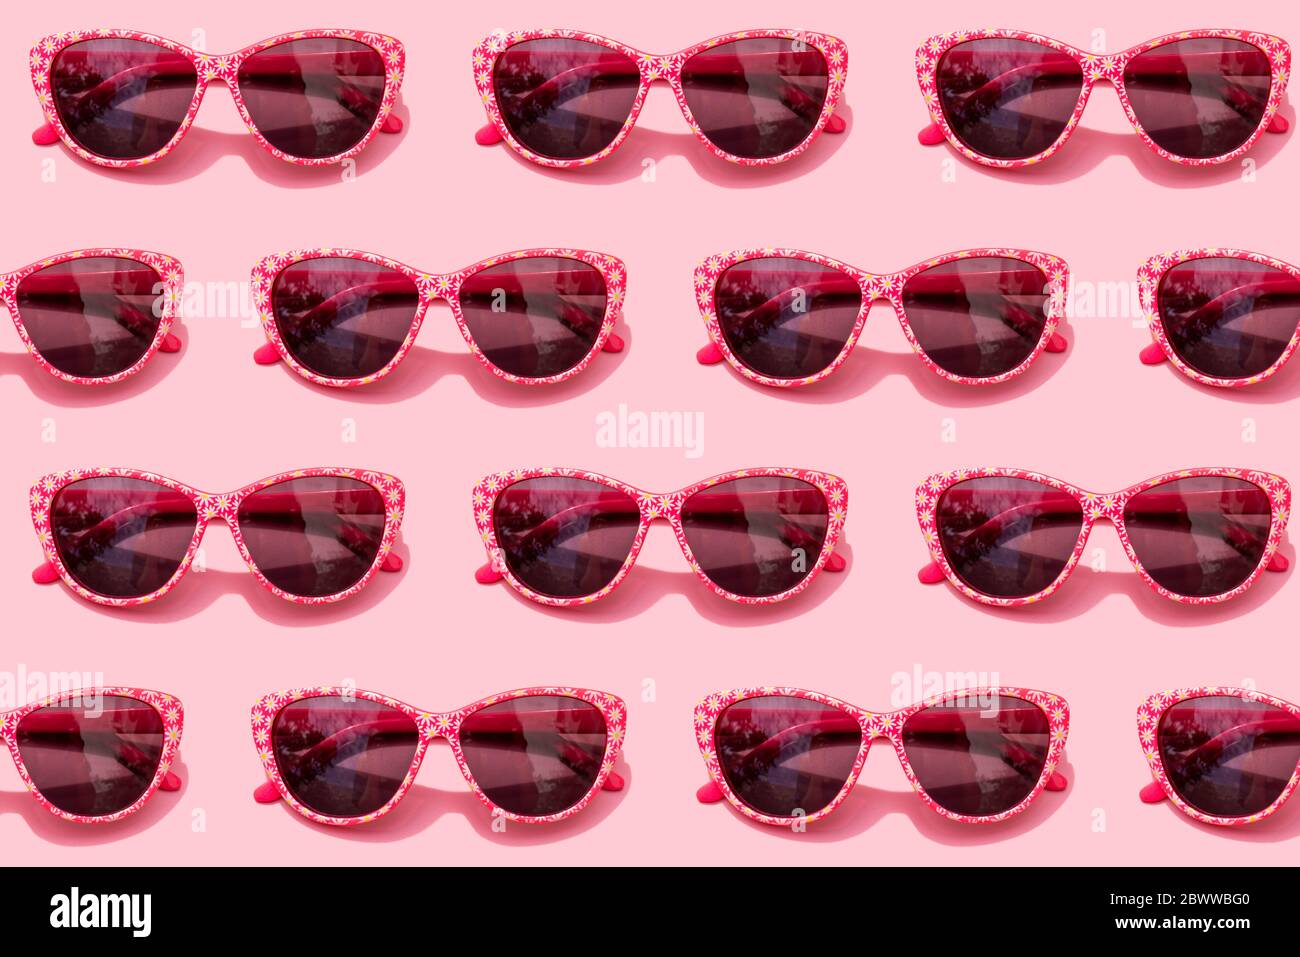 Motif de lunettes de soleil rétro rose sur fond rose pastel Banque D'Images